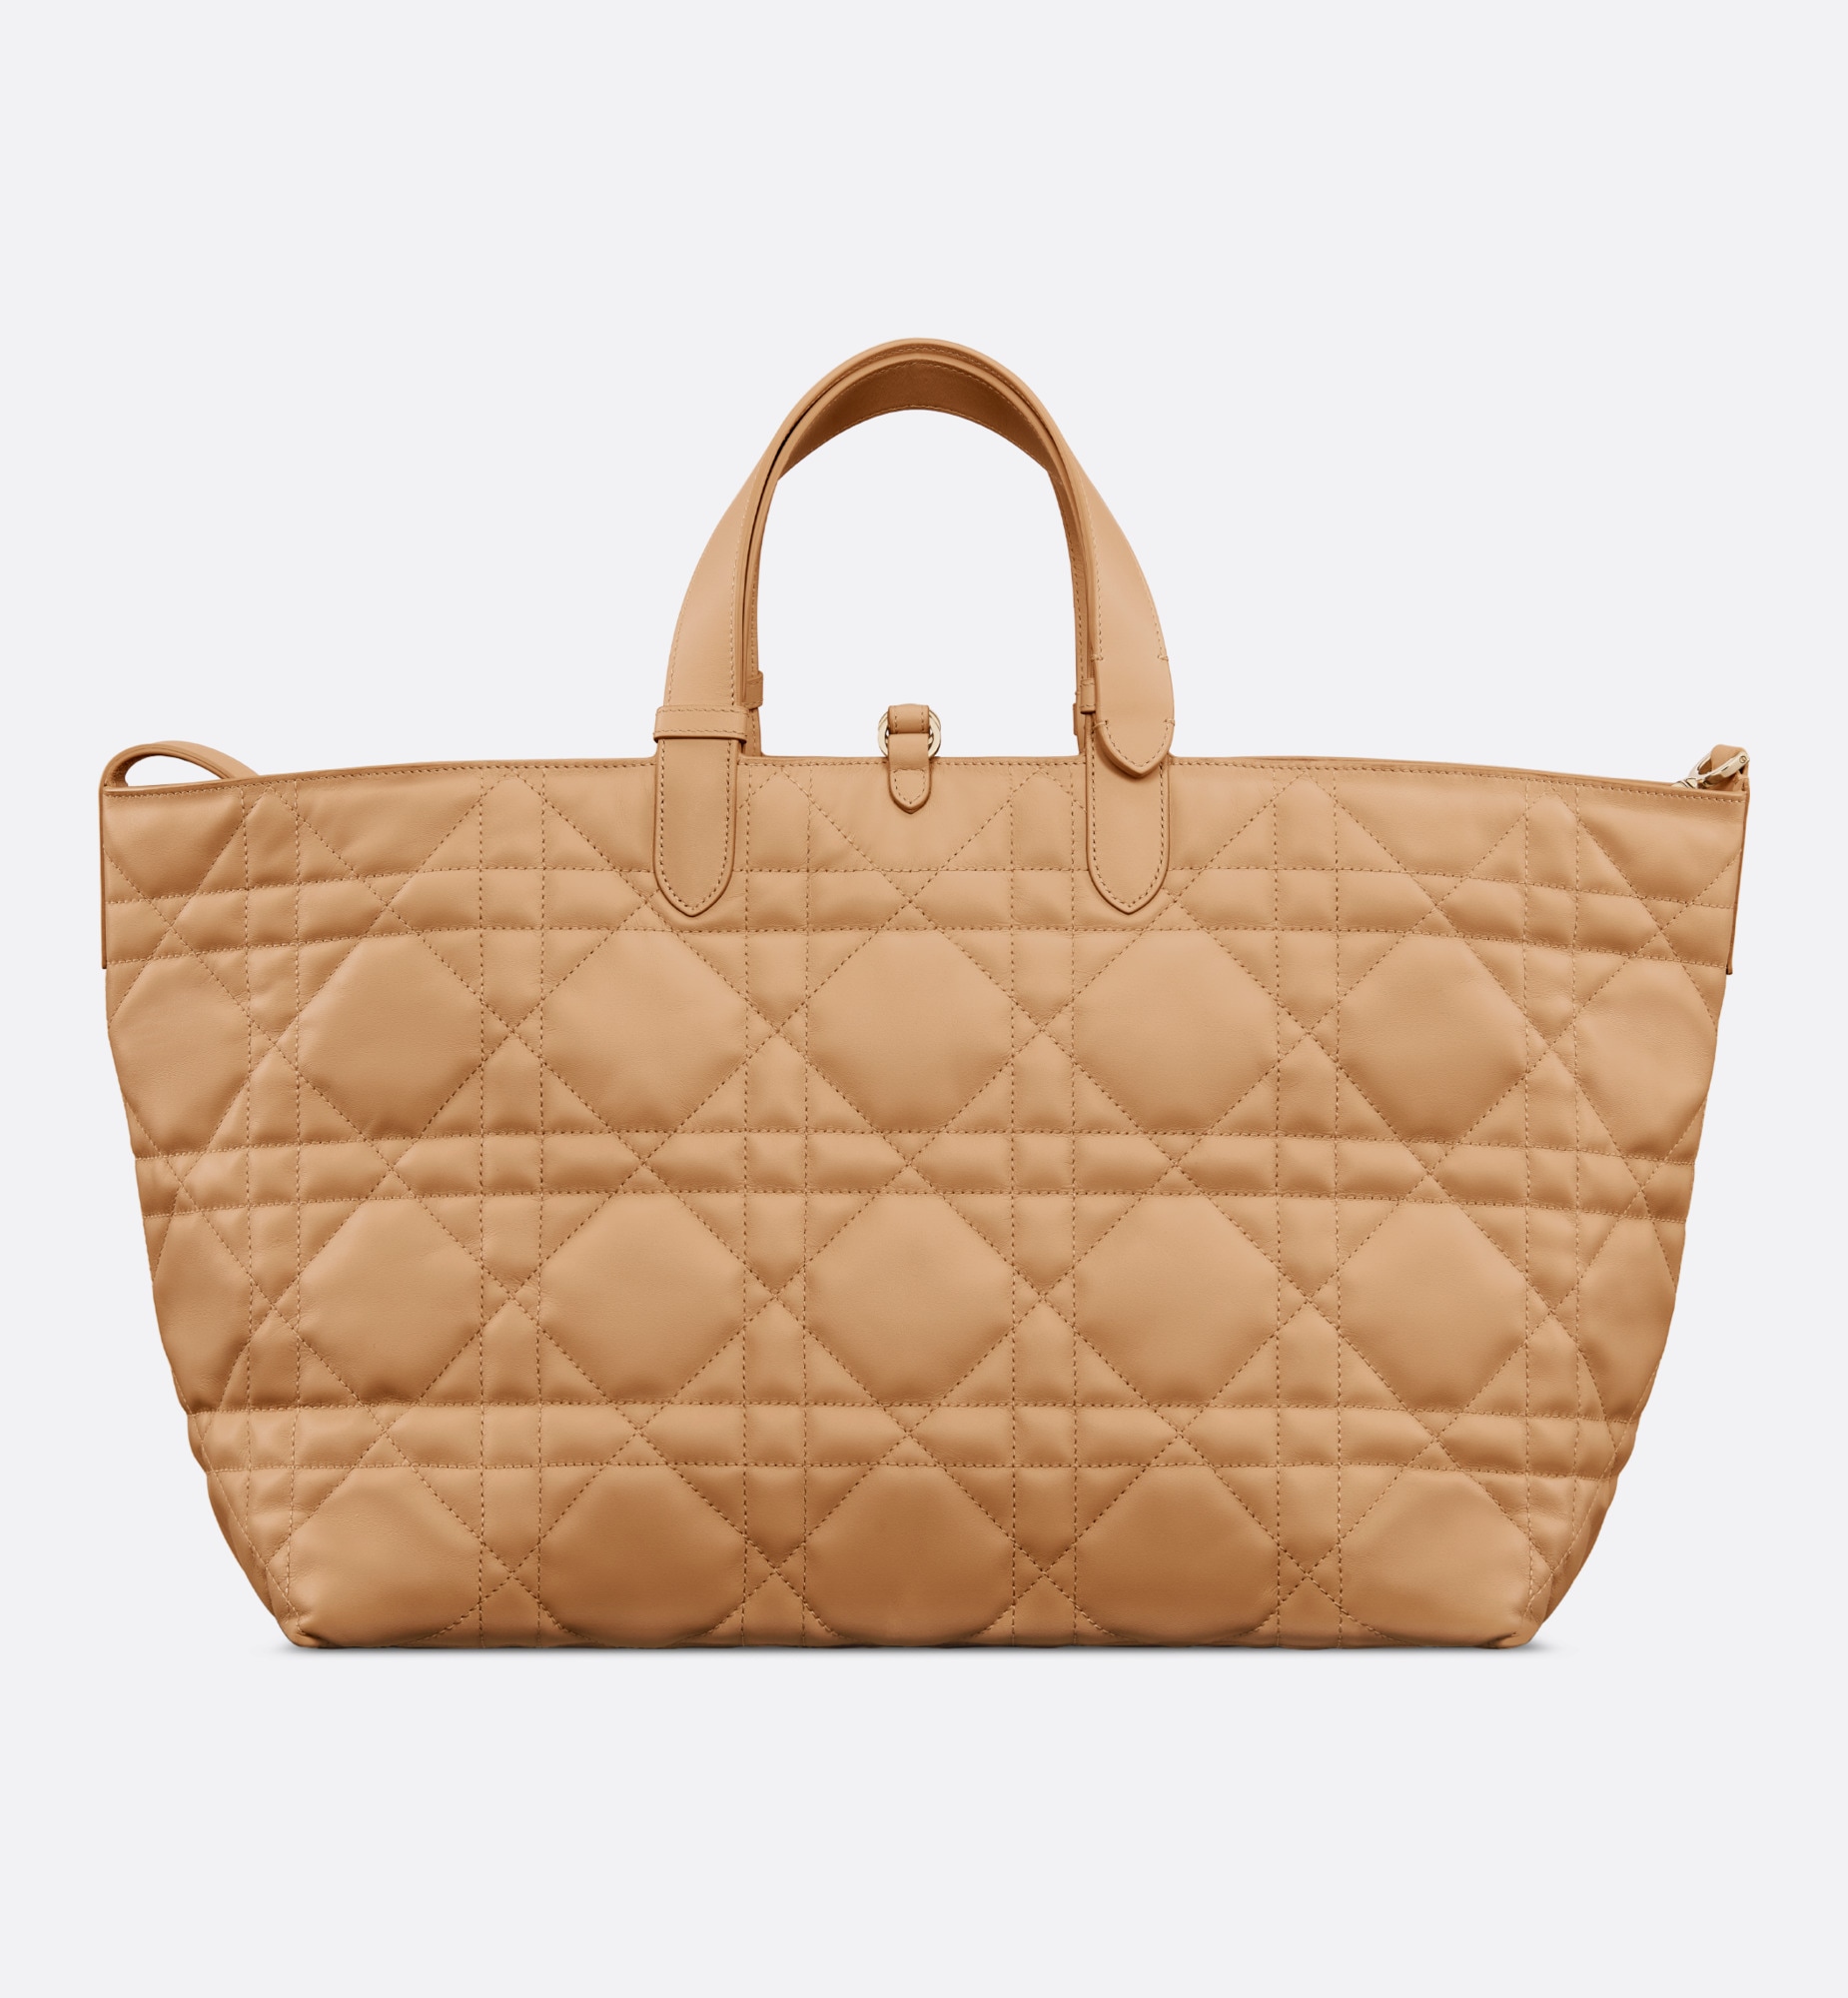 DIOR Large Dior Toujours Bag Medium Tan Macrocannage Calfskin